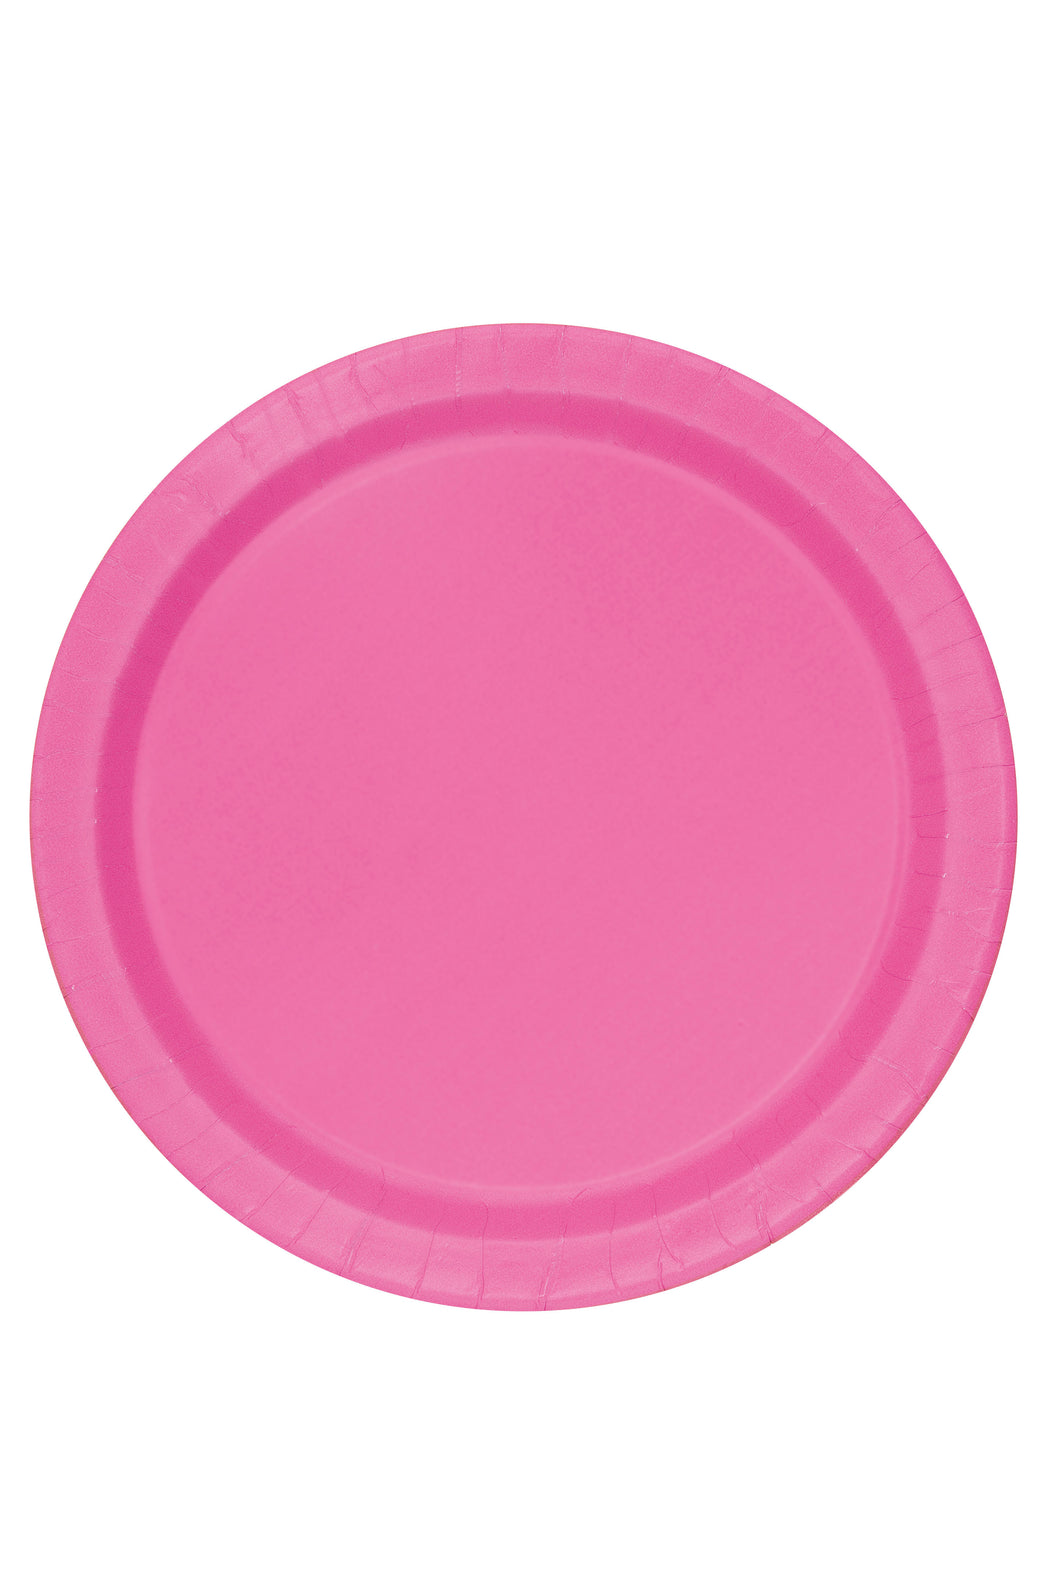 Platos Grandes Hot Pink - Paquete de 8